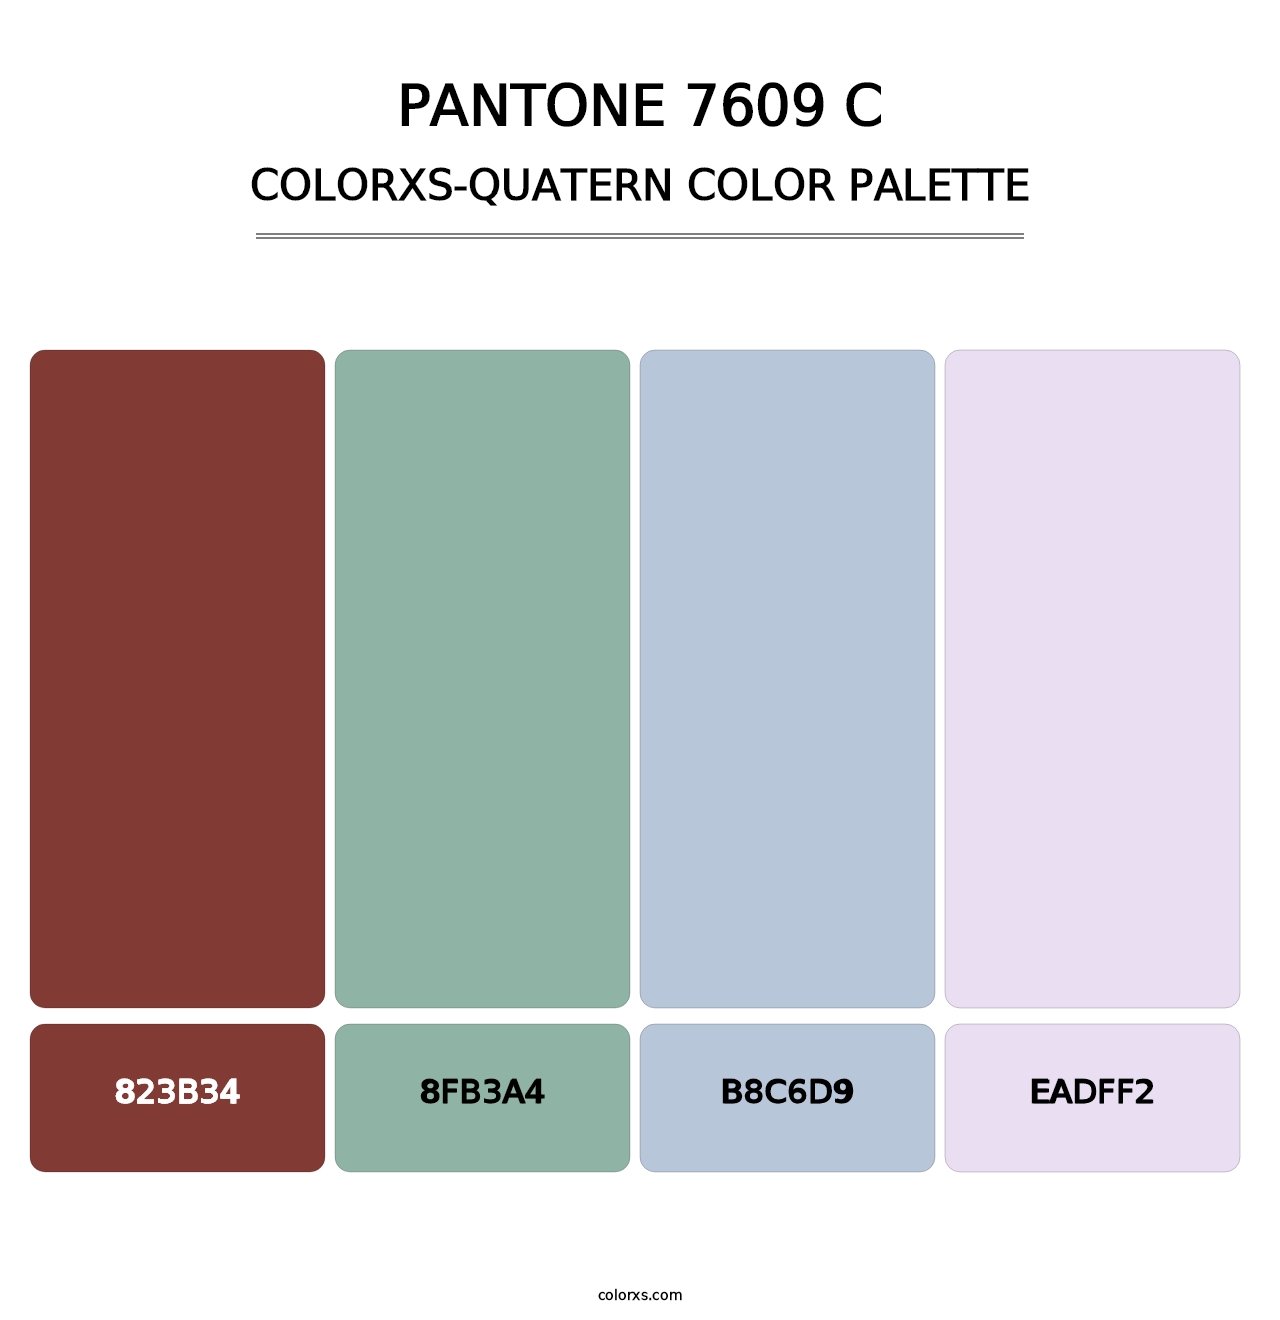 PANTONE 7609 C - Colorxs Quatern Palette